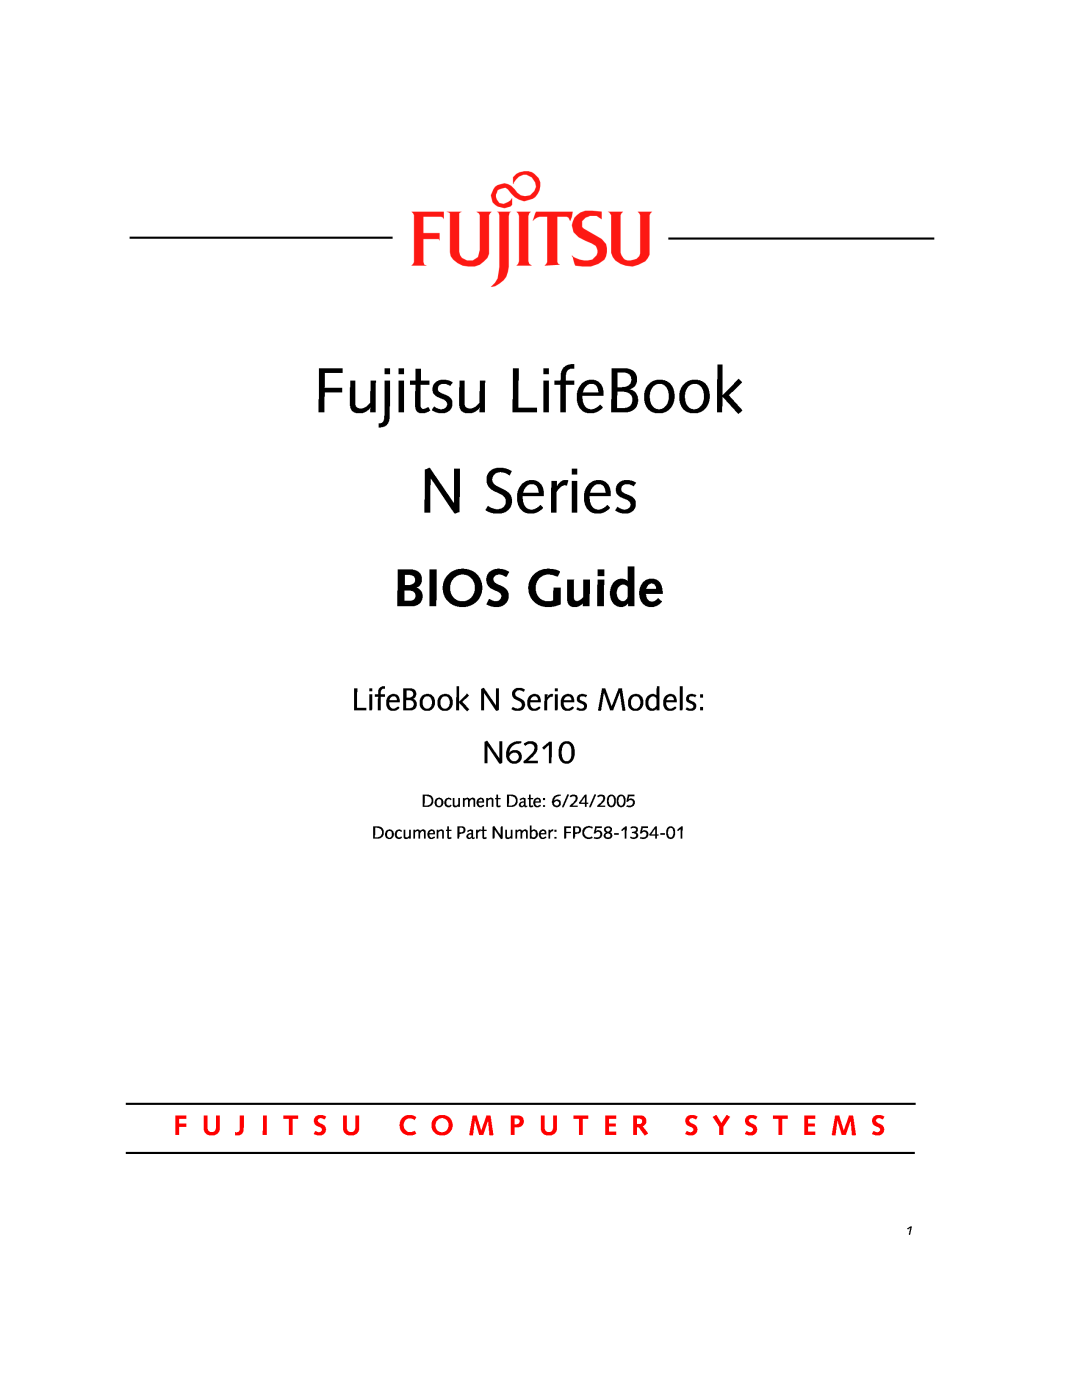 Fujitsu Siemens Computers manual Fujitsu LifeBook N Series, BIOS Guide, LifeBook N Series Models N6210 